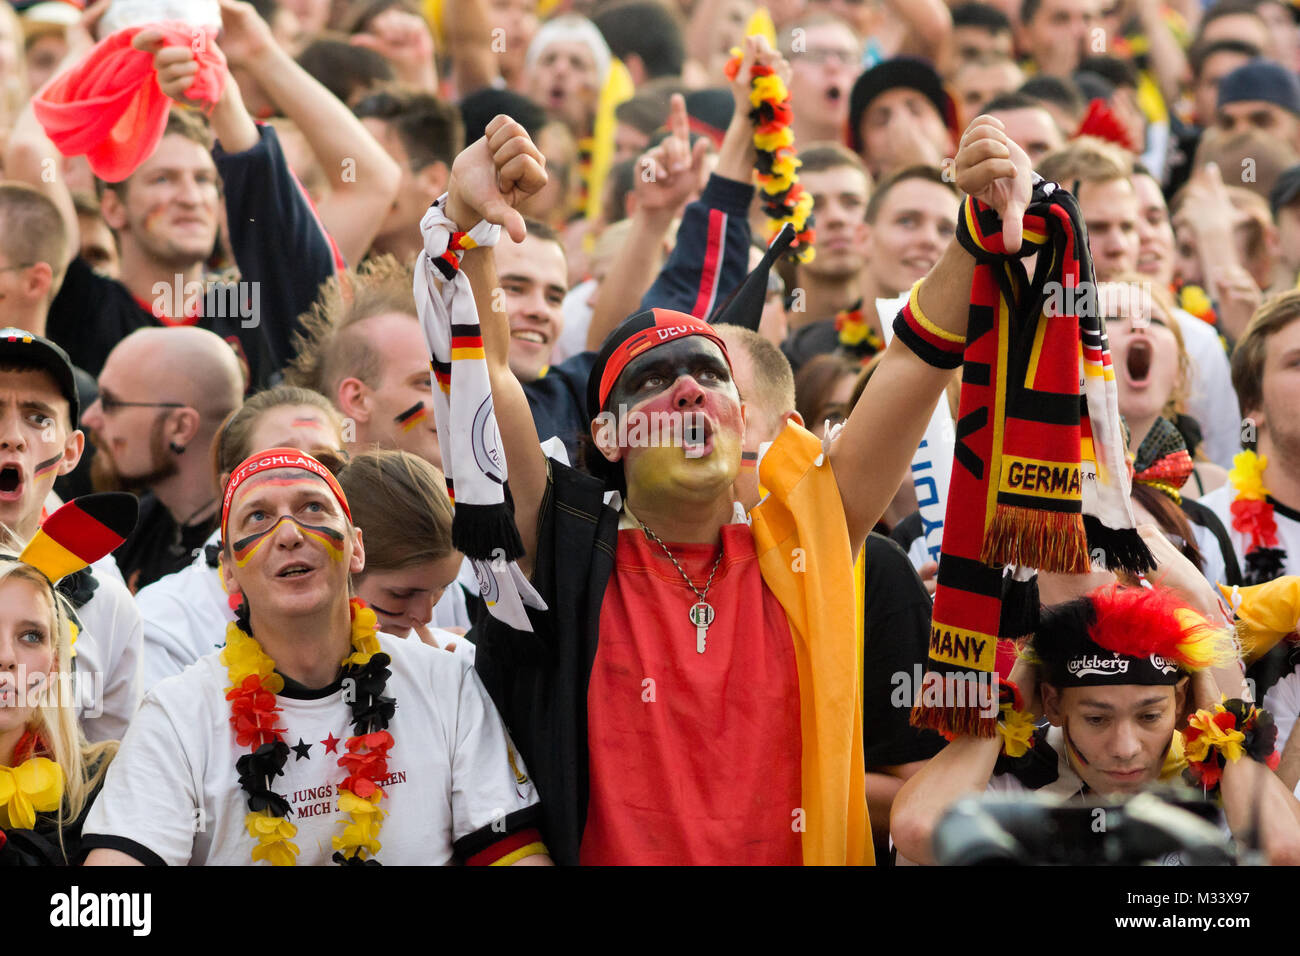 Menschenmassen verfolgen auf der riesigen Leinwand und freuen sich auf derFanmeile zur Europameisterschaft 2012 Deutschland gegen Griechenland am Brandenburger Tor in Berlin Foto Stock